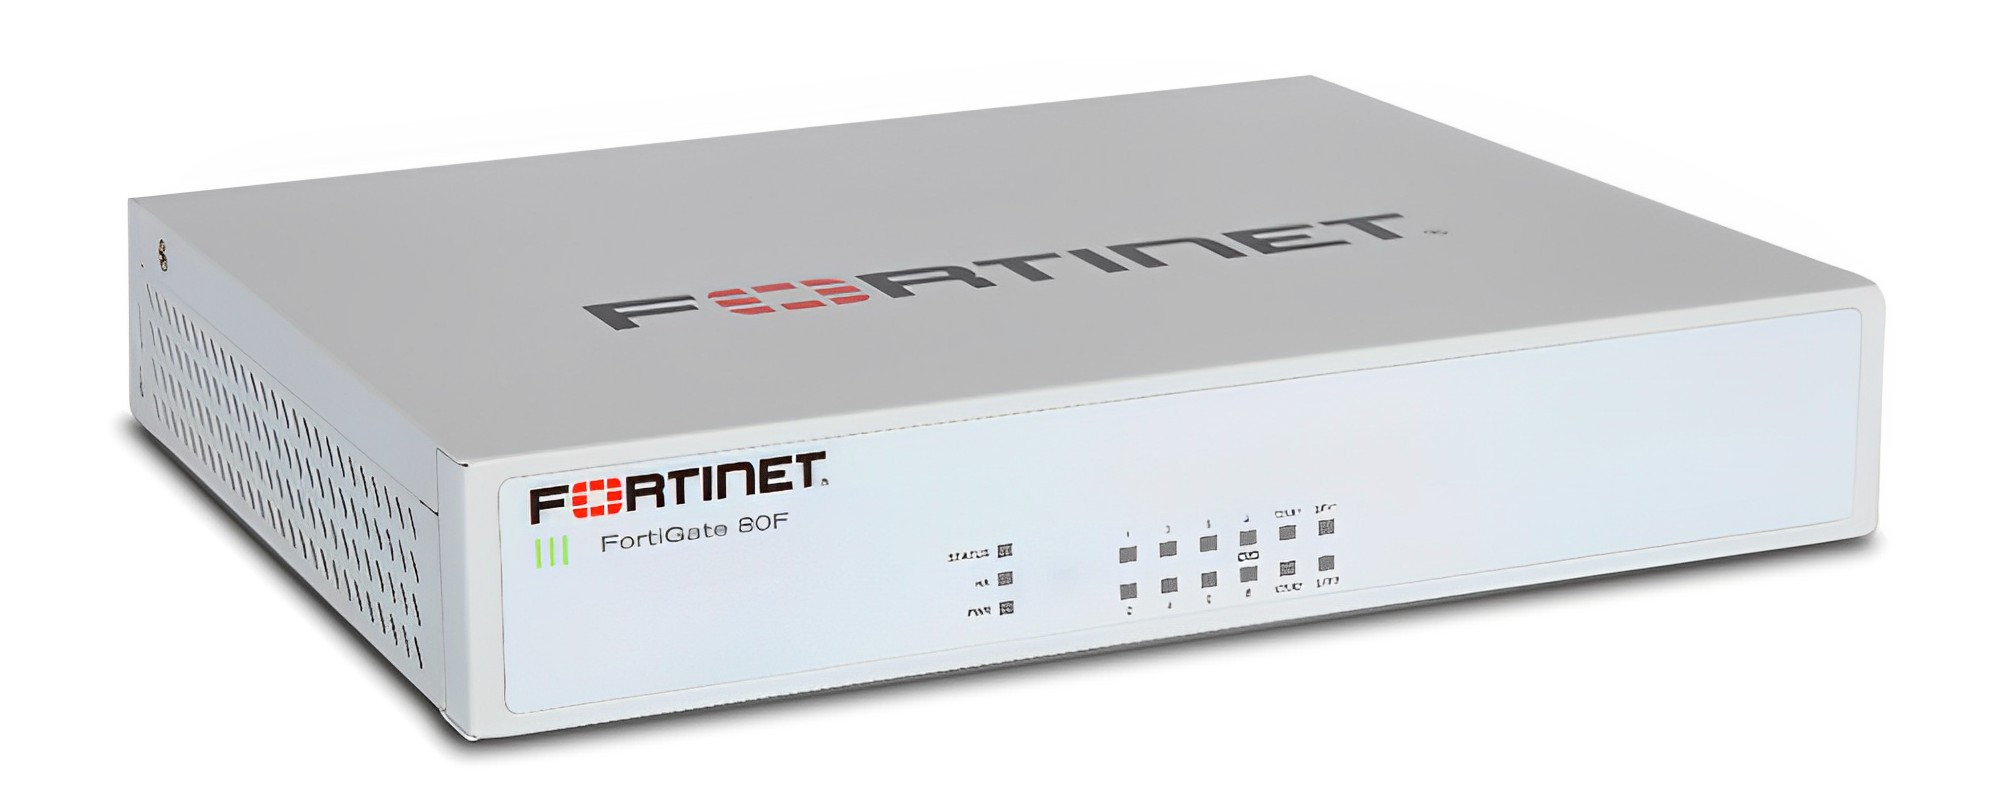 Fortinet FG-81F Next-Generation Firewall